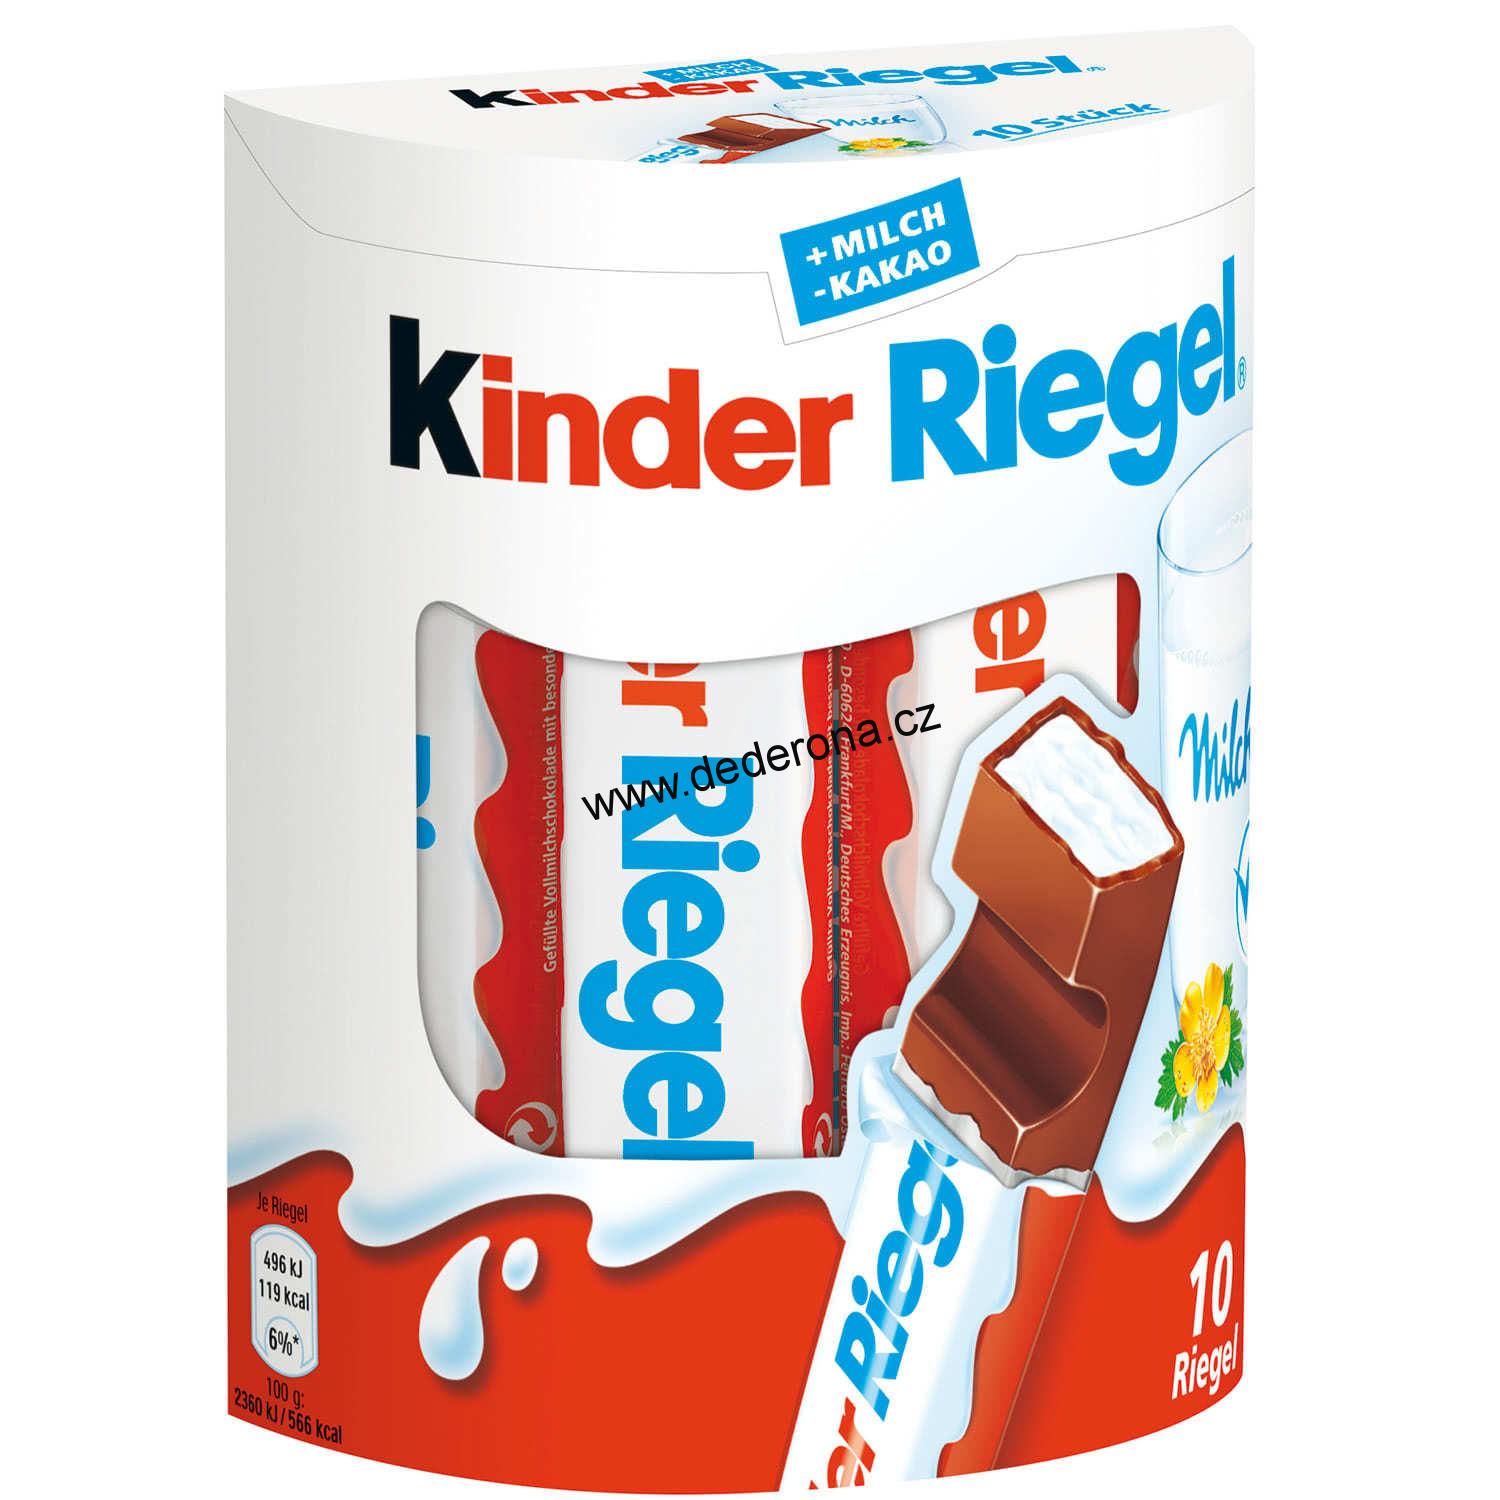 Kinder Riegel čokoládové tyčinky 10ks-210g Německo